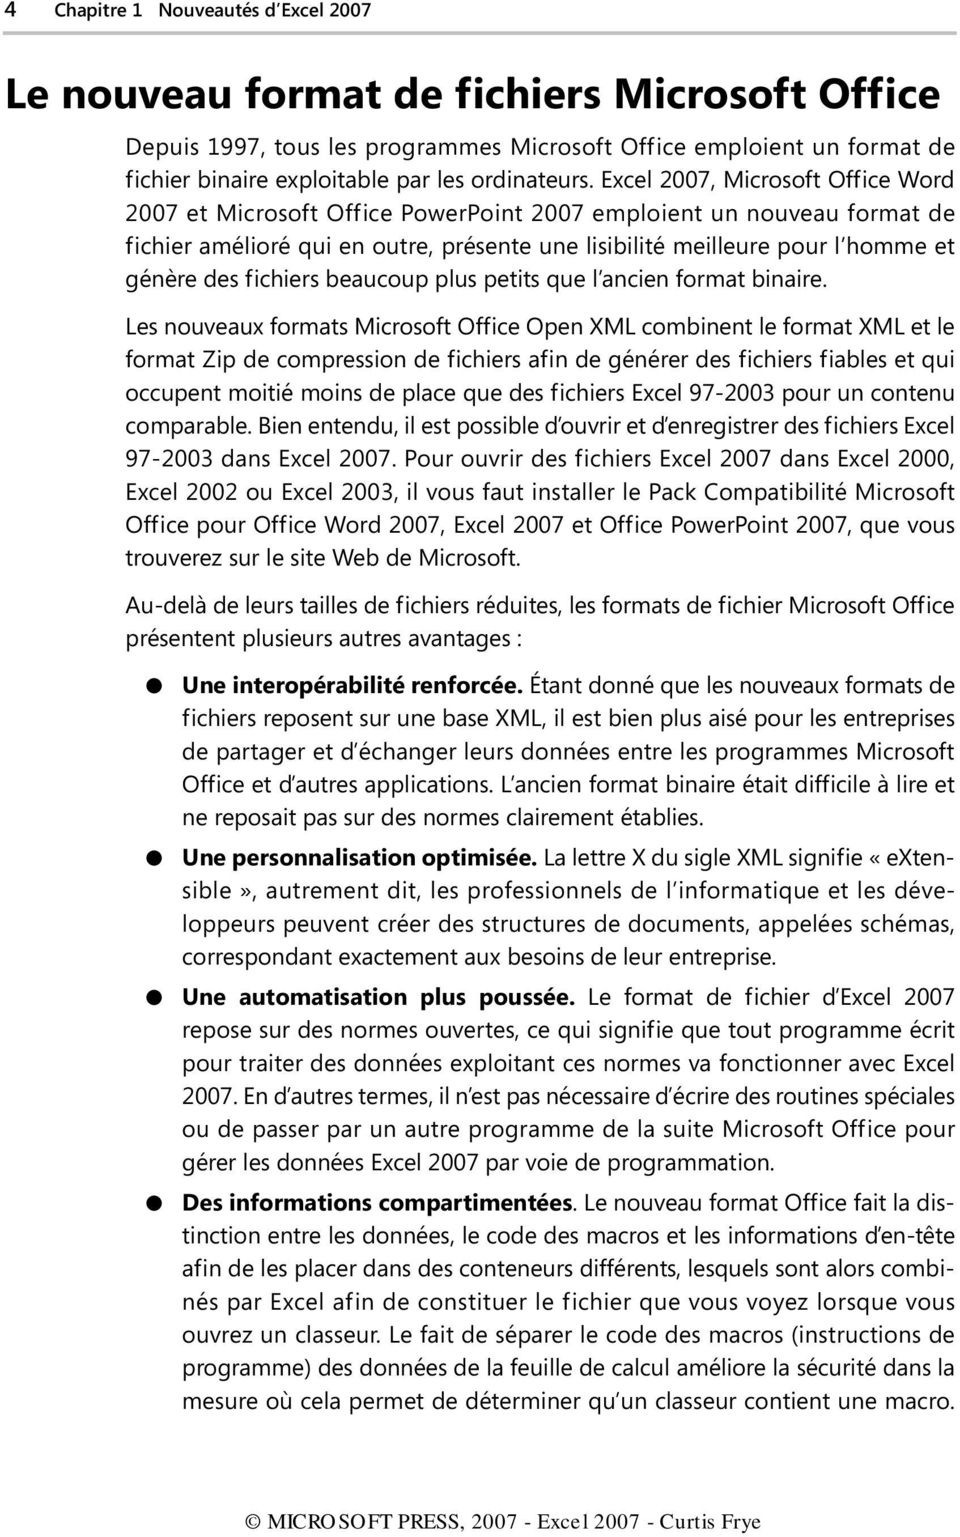 Excel 2007, Microsoft Office Word 2007 et Microsoft Office PowerPoint 2007 emploient un nouveau format de fichier amélioré qui en outre, présente une lisibilité meilleure pour l homme et génère des